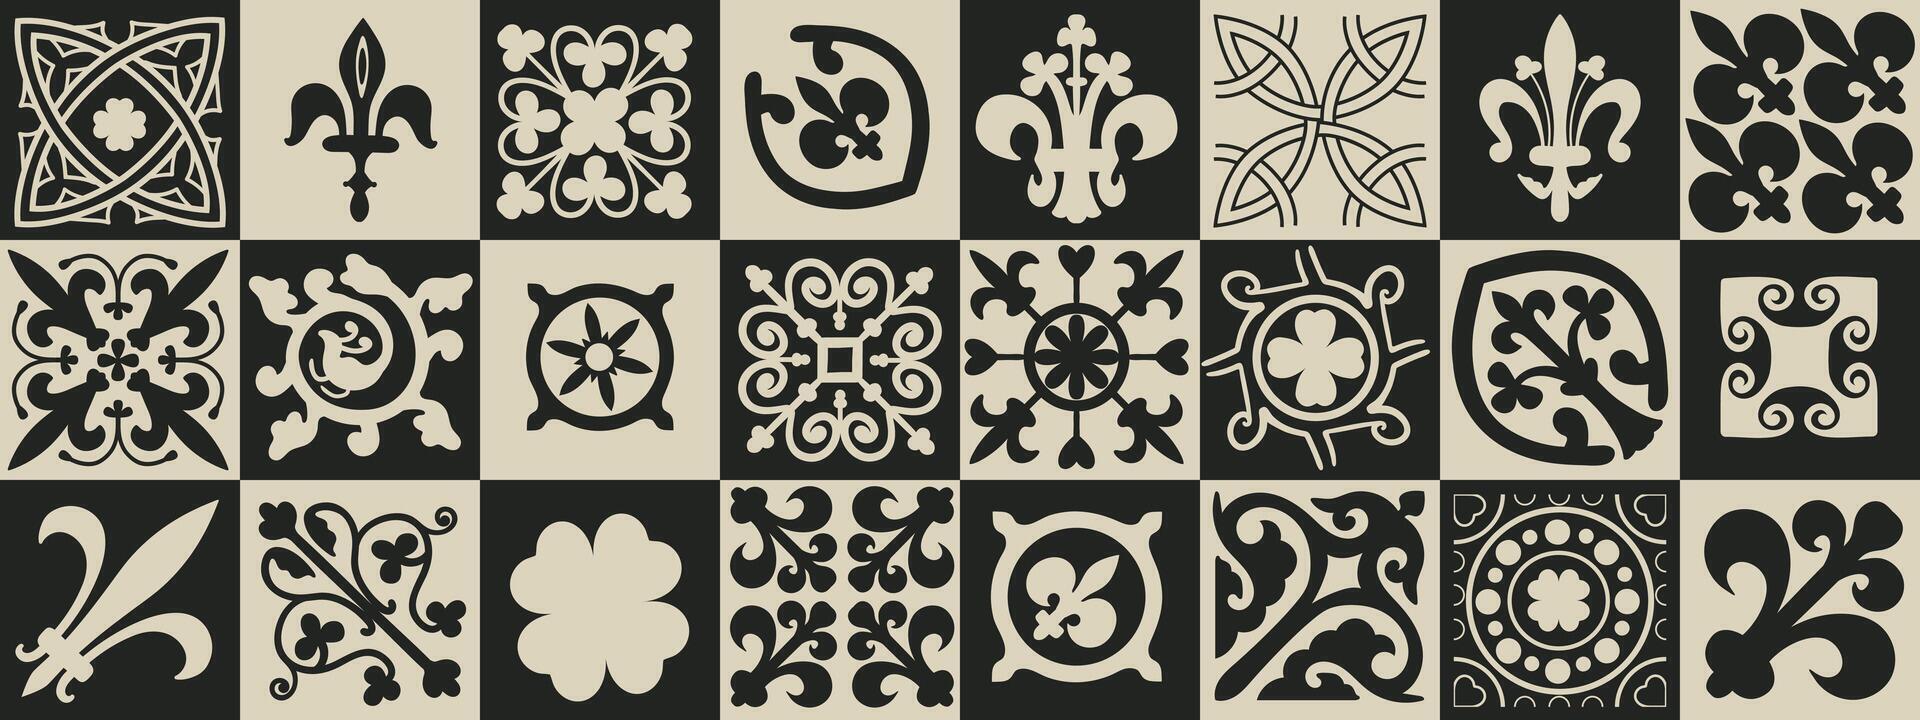 celtic sömlös mönster. medeltida fyrkant plattor med irländsk folk stam- motiv och knutar. vektor